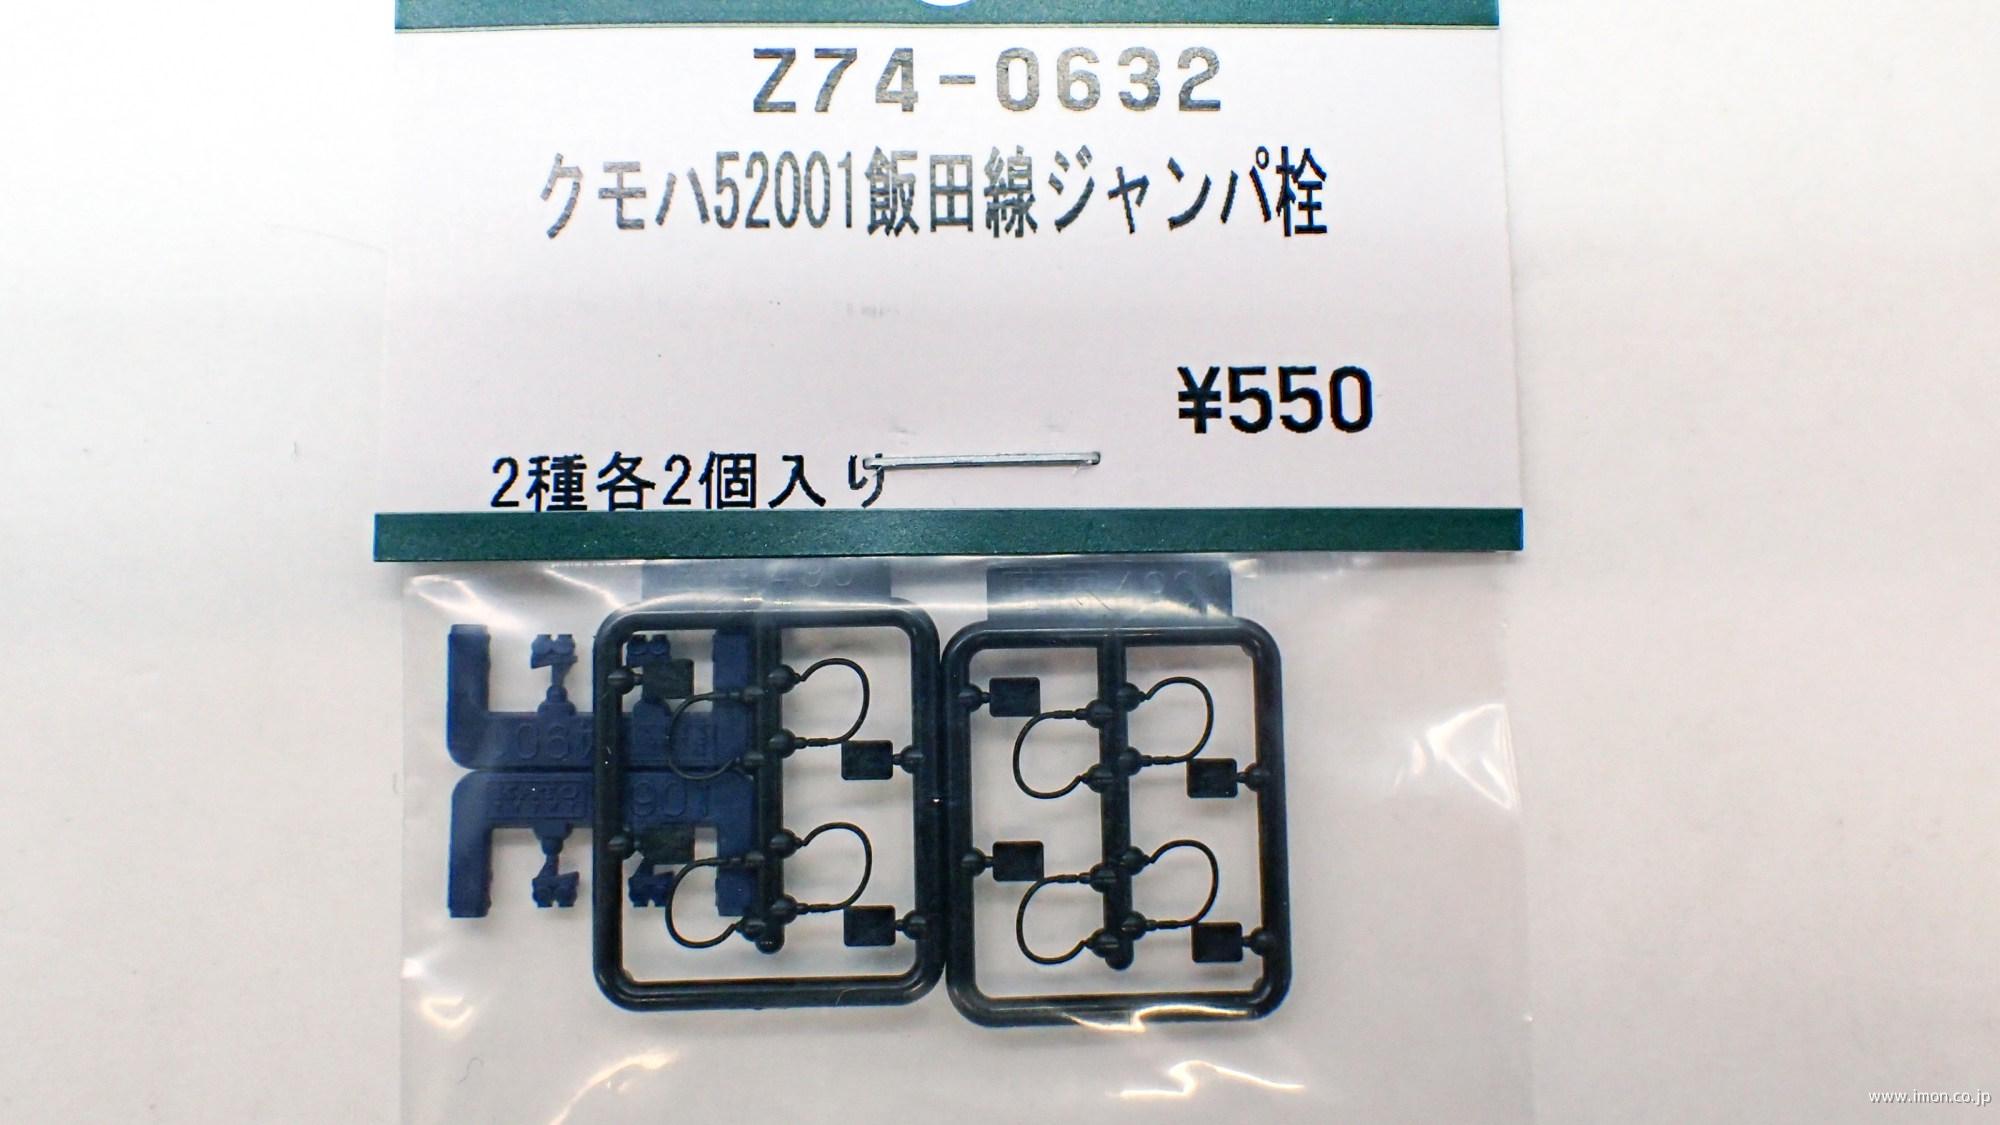 Ｚ７４－０６３２　クモハ５２００１飯田線　ジャンパ栓